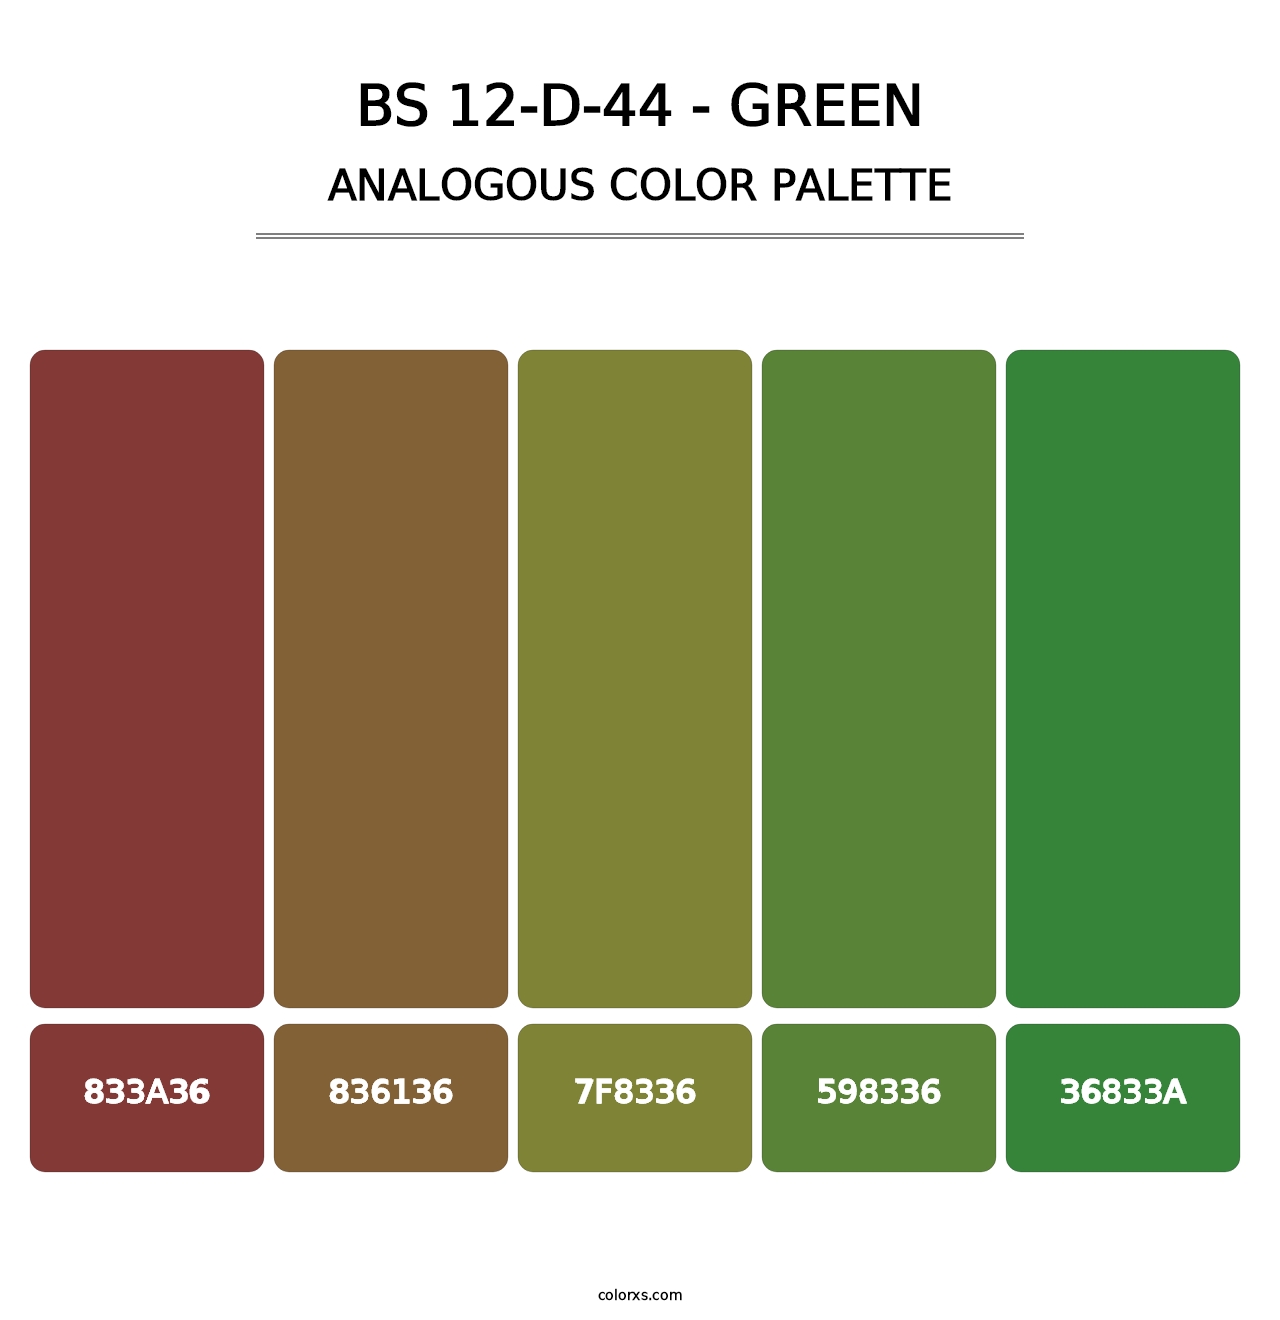 BS 12-D-44 - Green - Analogous Color Palette